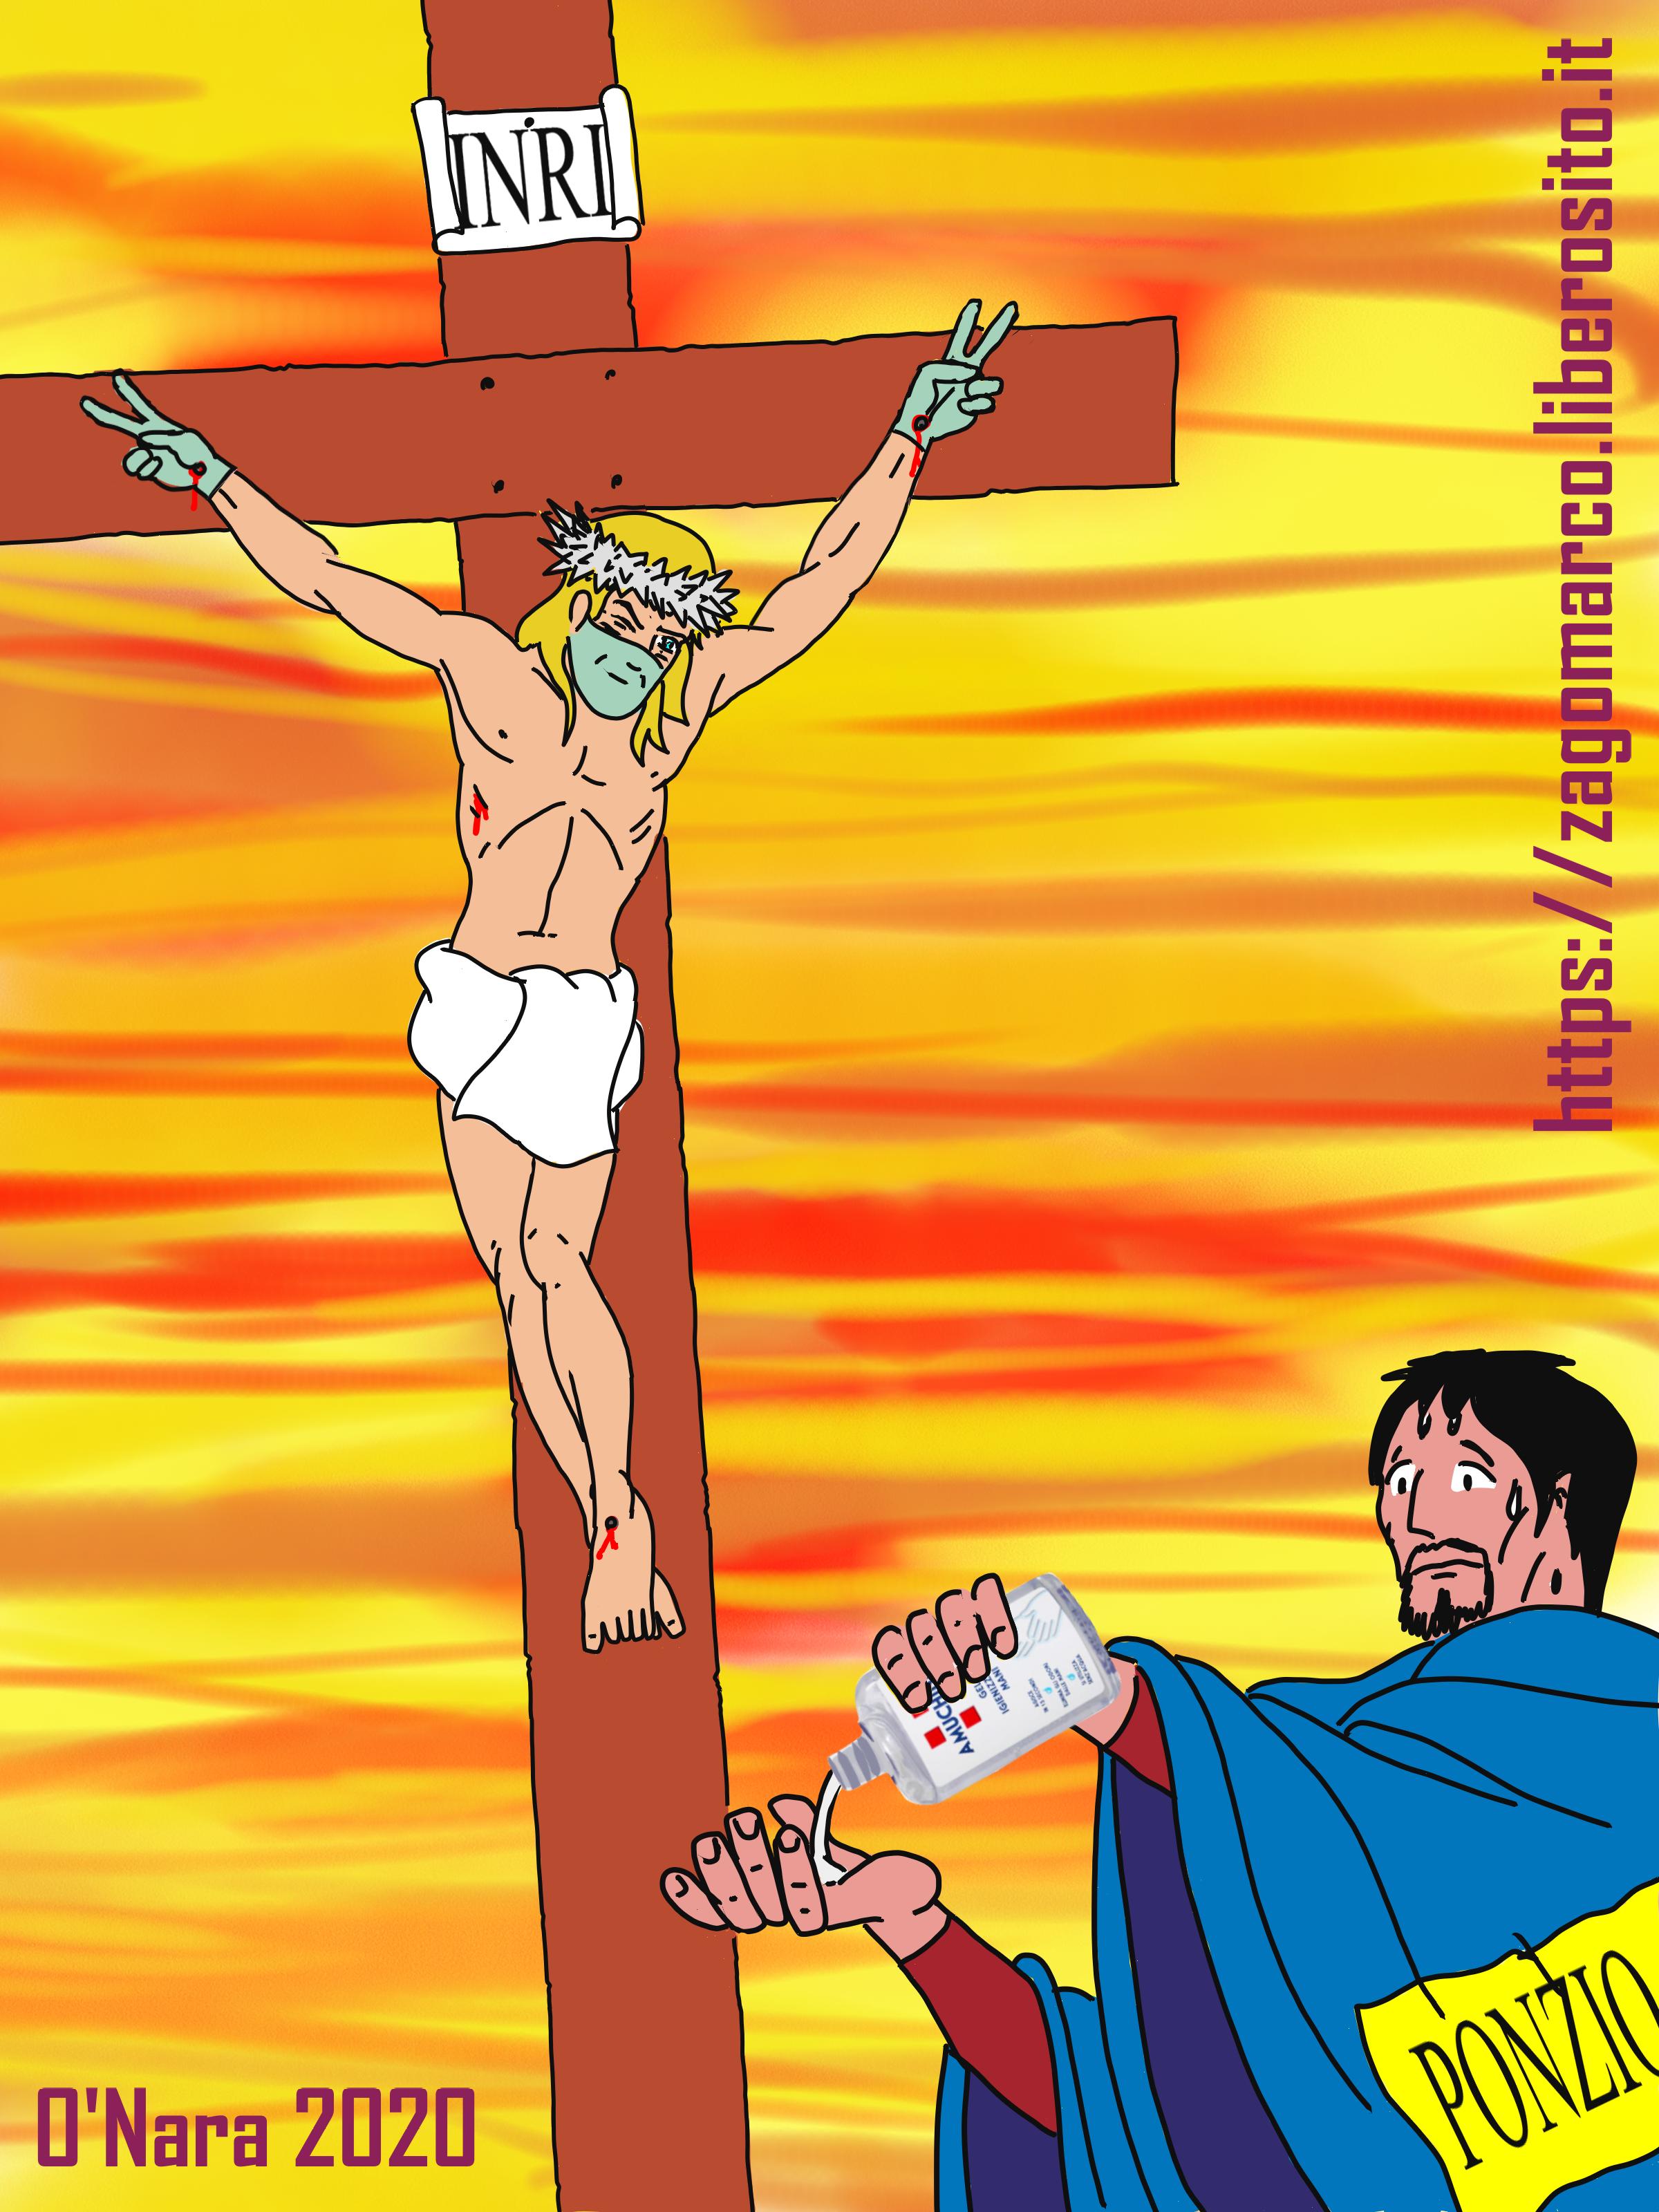 Gesù crocifisso Pasqua 2020 con guanti e mascherina by marco zagonara